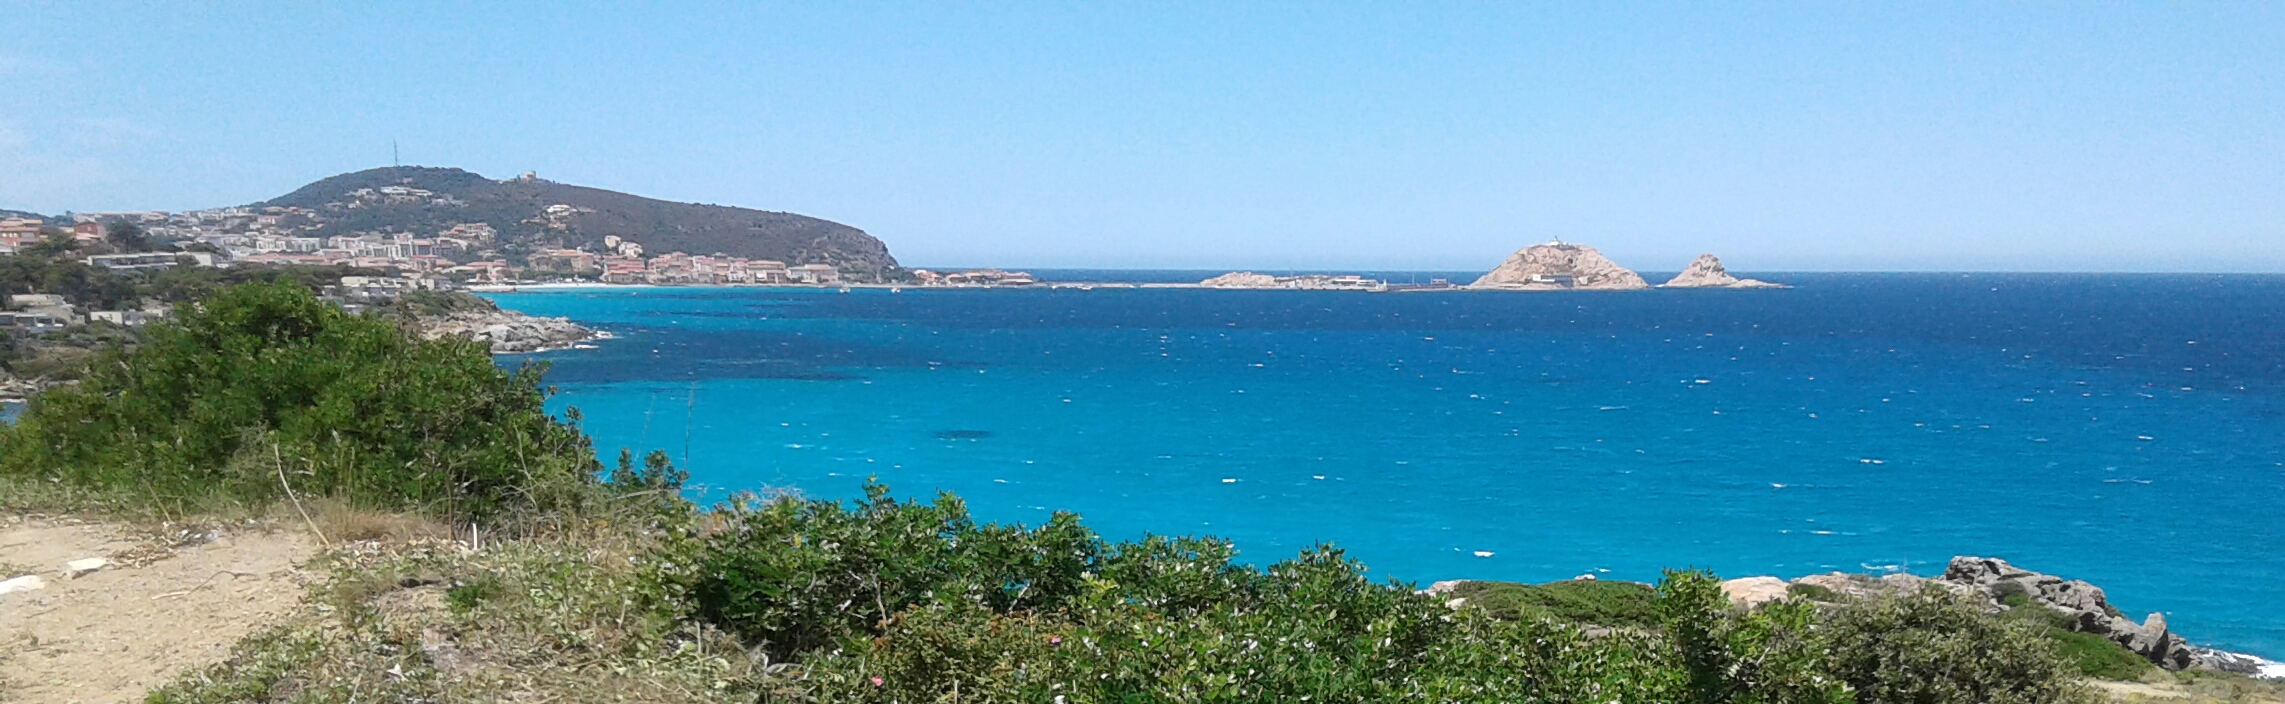 Les différents Bleus de la mer devant l ile de la Pietra et Lisula Rossa (Bernard Lorriaux)